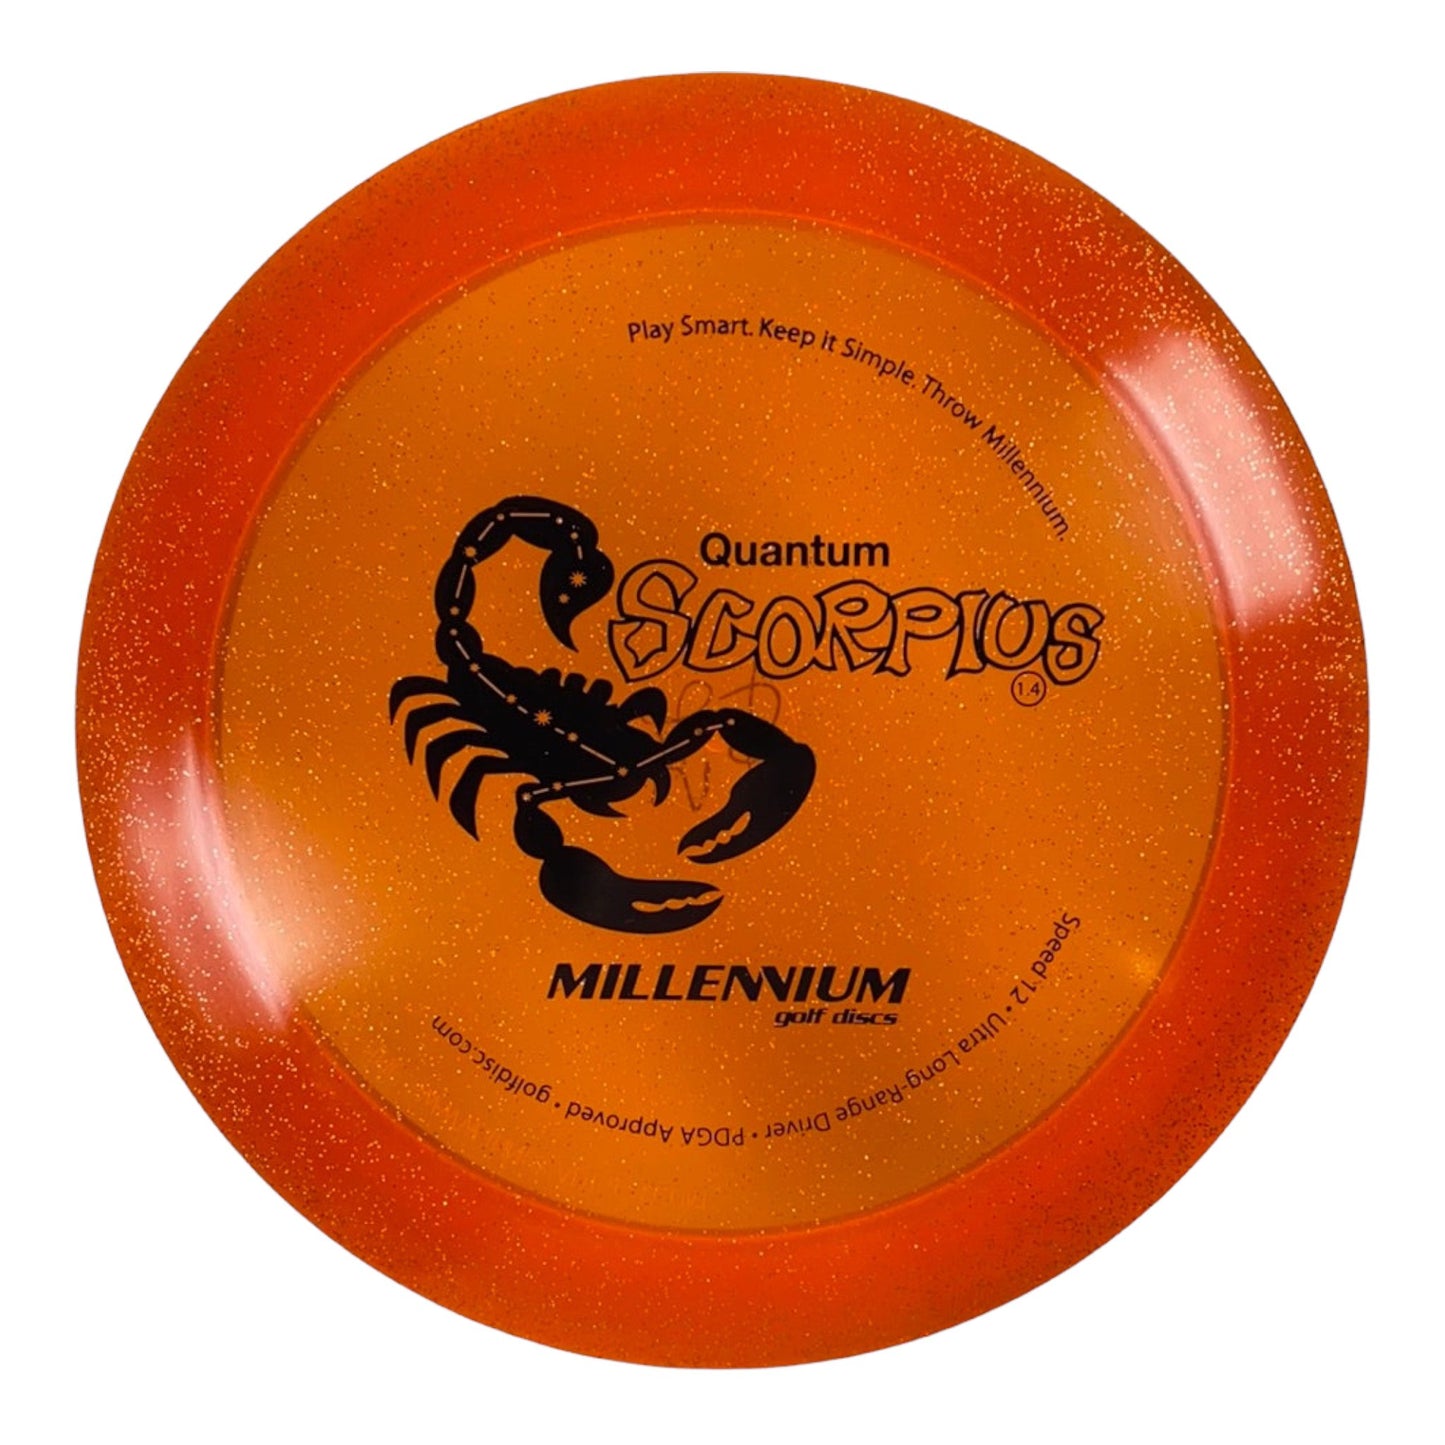 Millennium Golf Discs Scorpius | Quantum Stardust | Orange/Black 167g Disc Golf